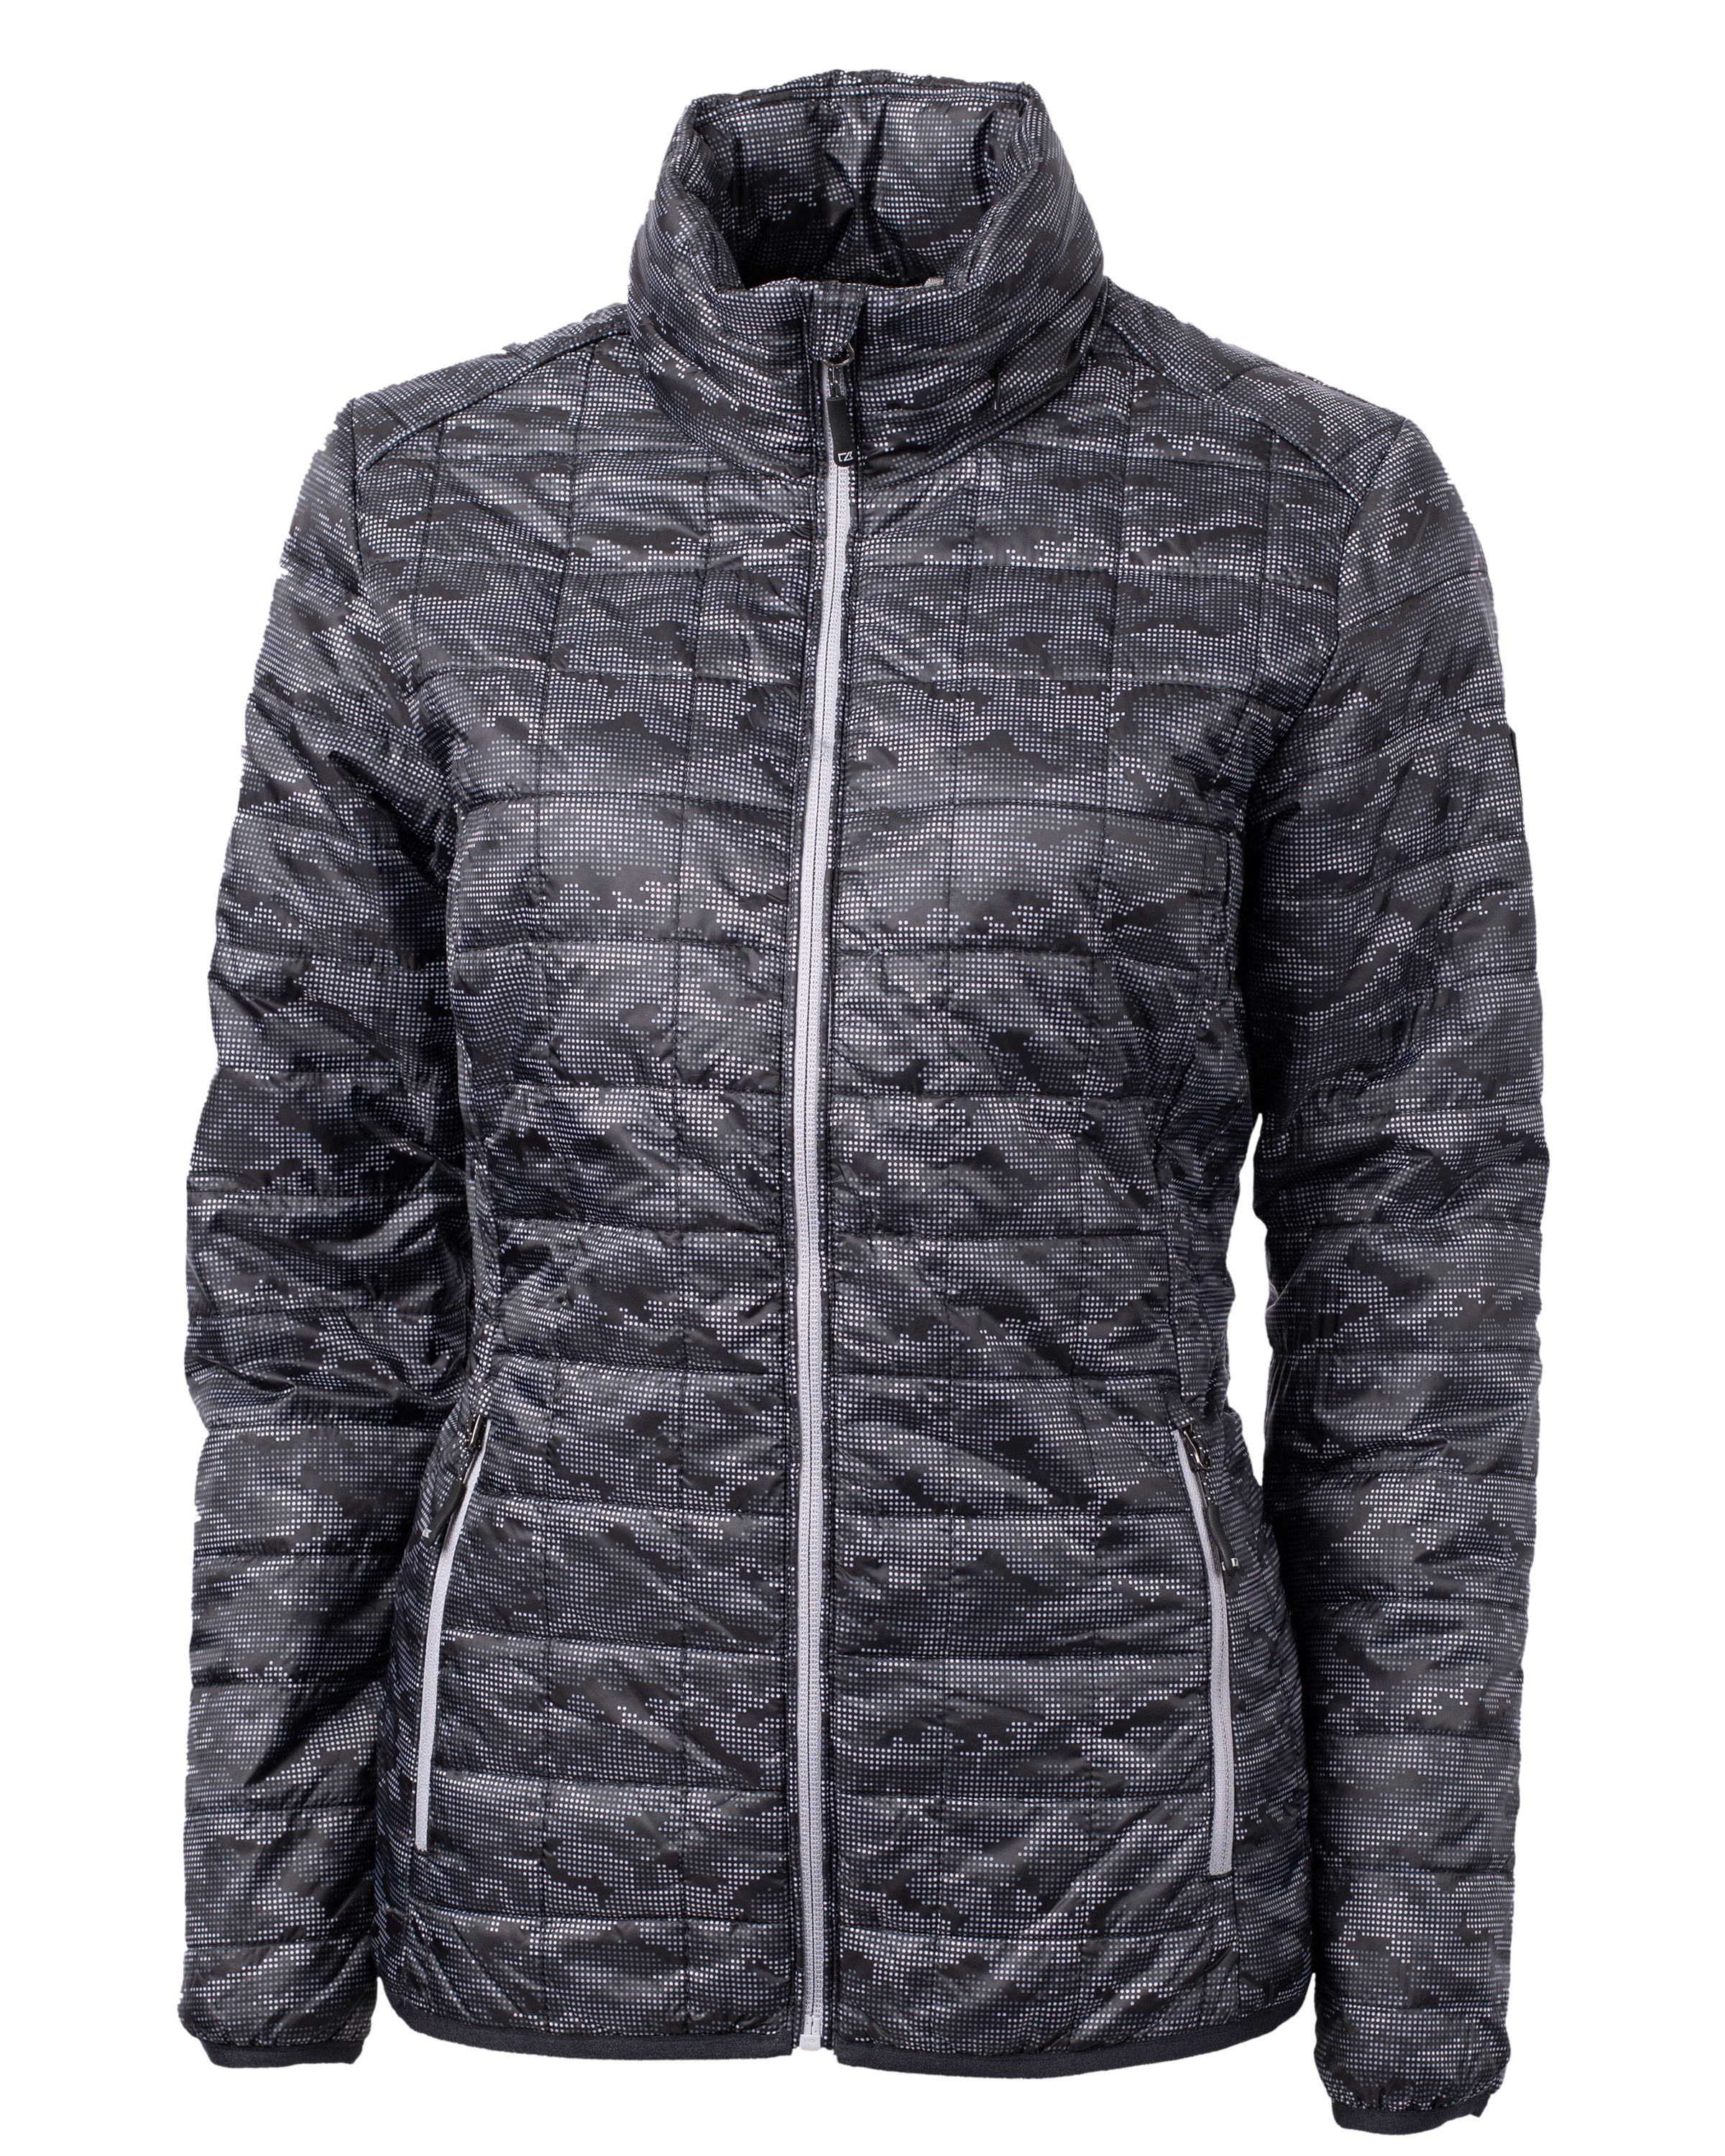 CUTTER & BUCK LCO00053 - Rainier PrimaLoft® Women's Eco Insulated Full Zip Printed Puffer Jacket